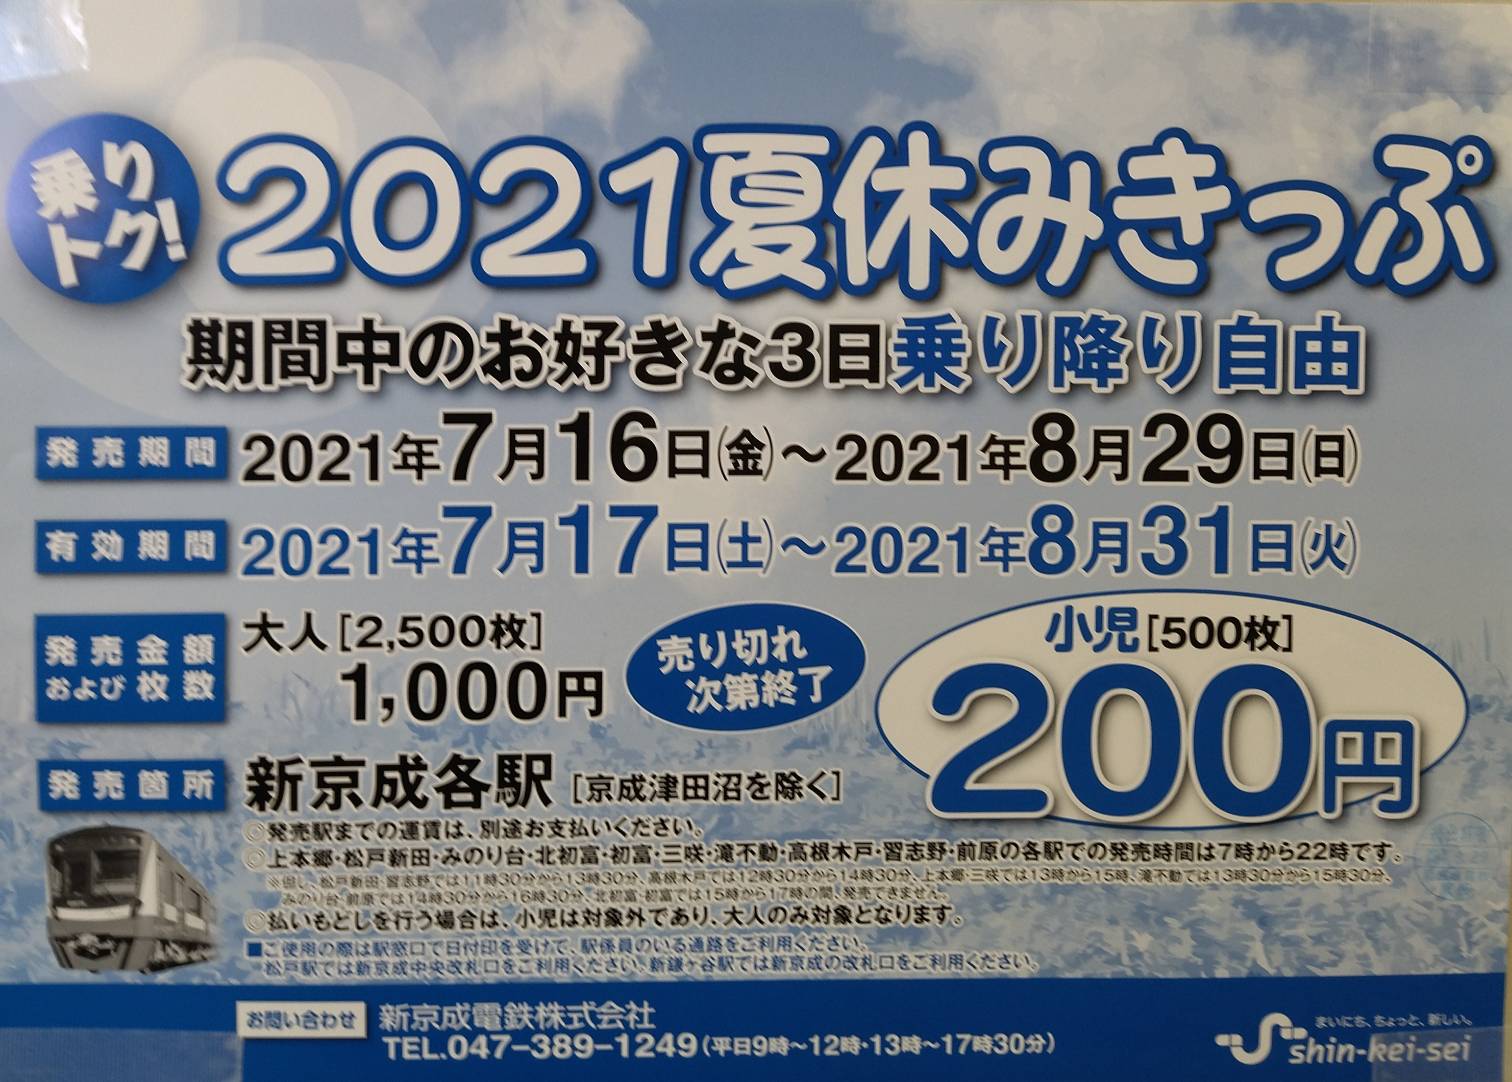 新京成電鉄のお得なきっぷ2021夏乗り放題